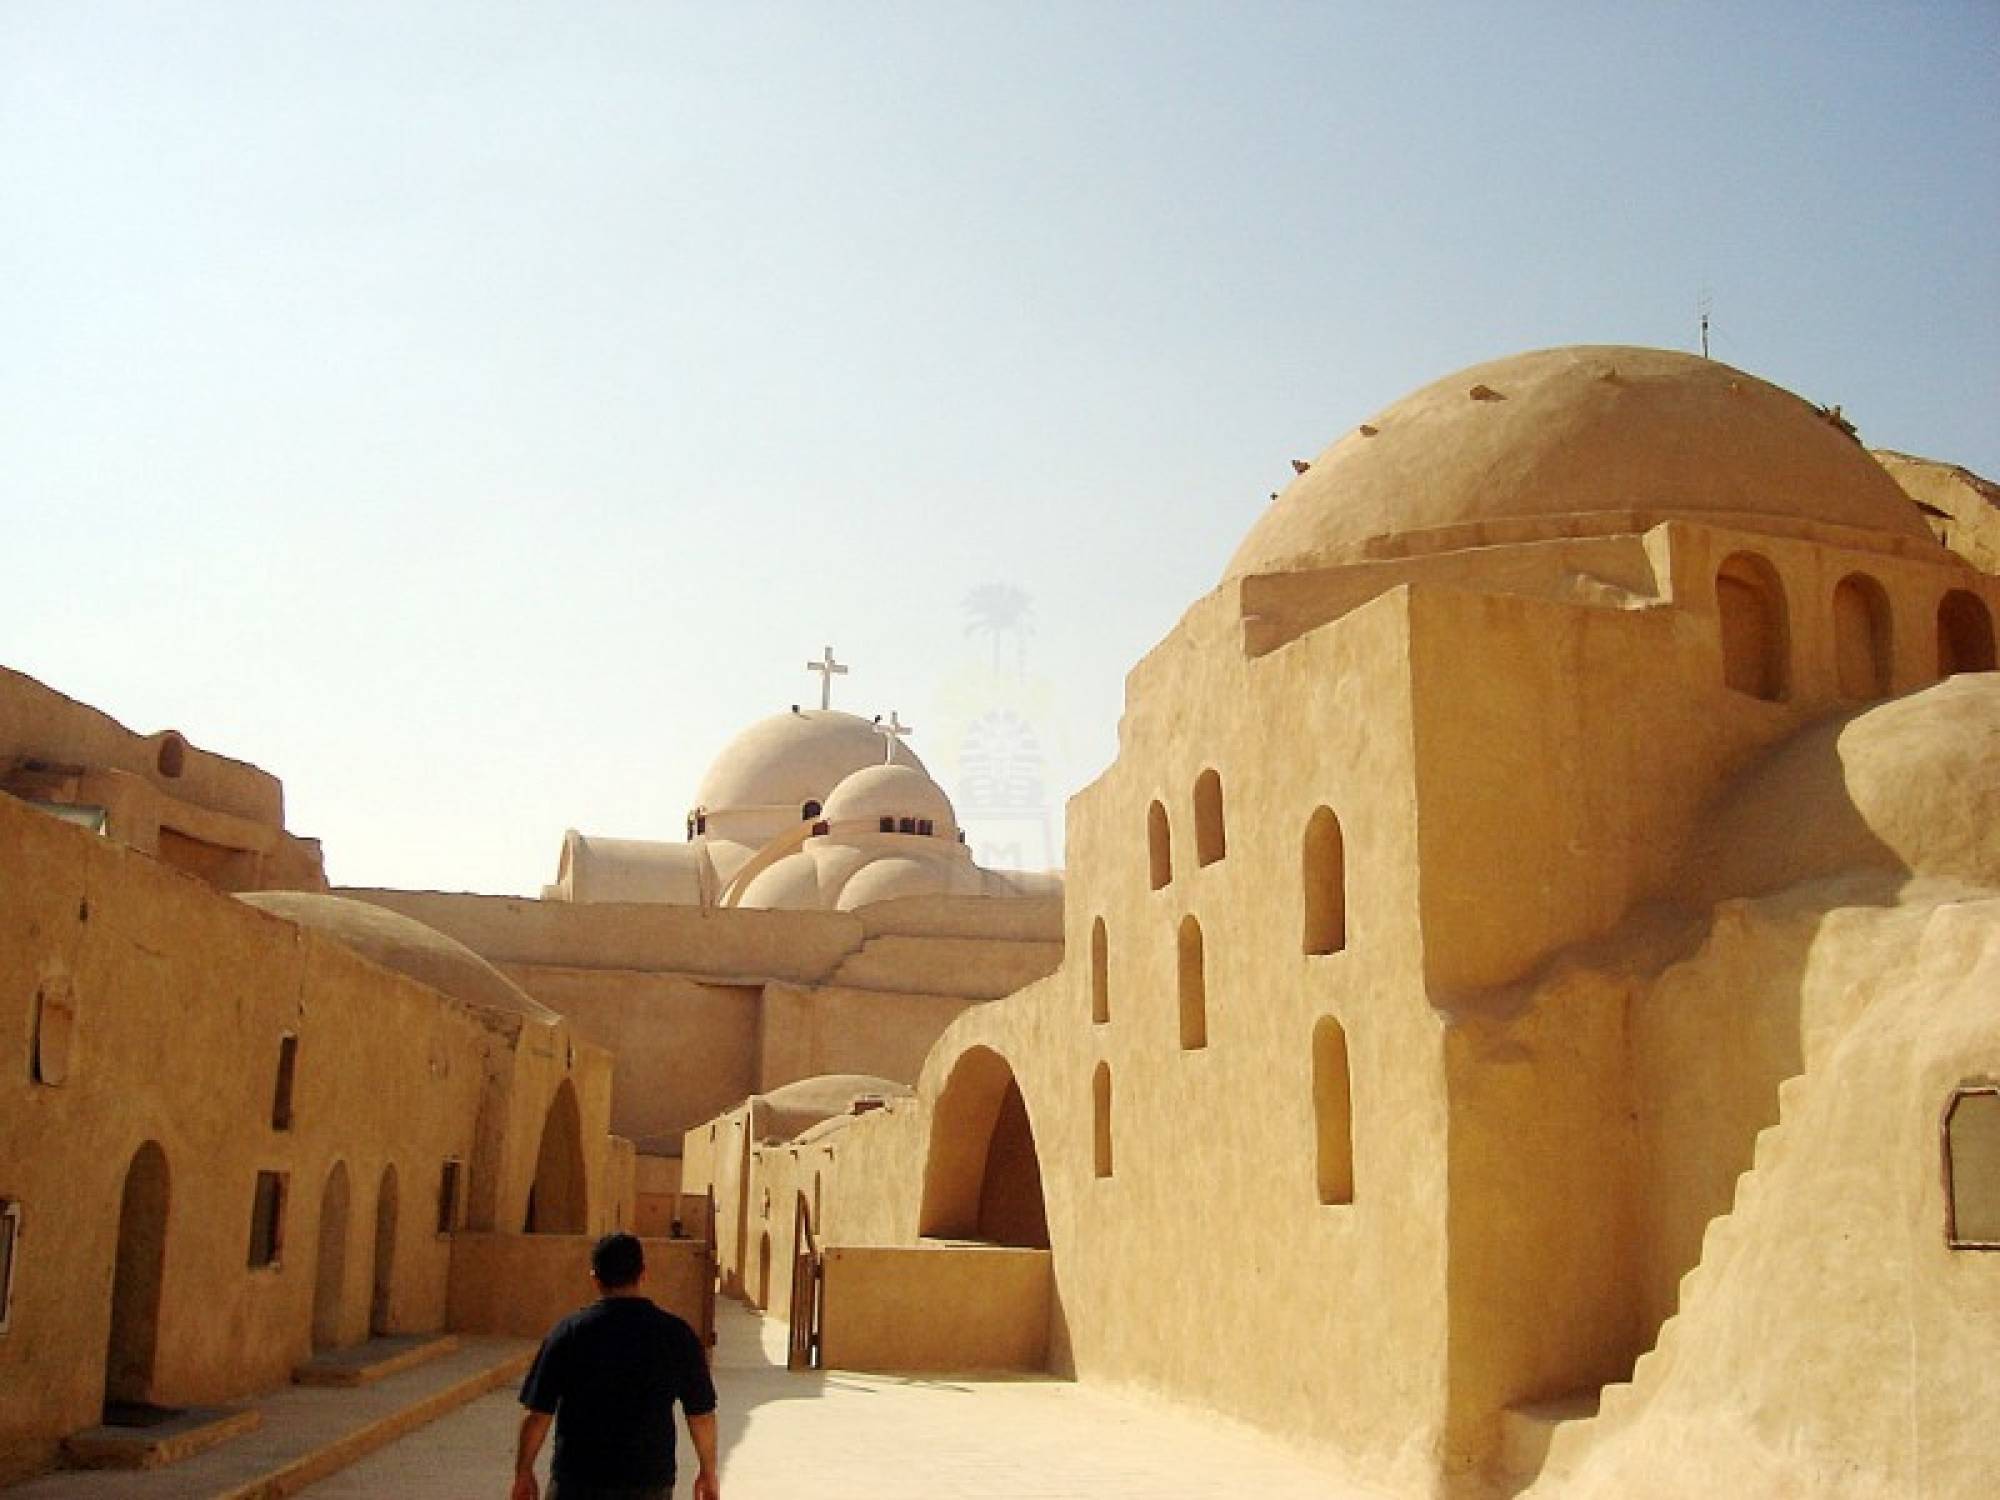 Day Tour to Wadi El Natroun Monastery from Cairo